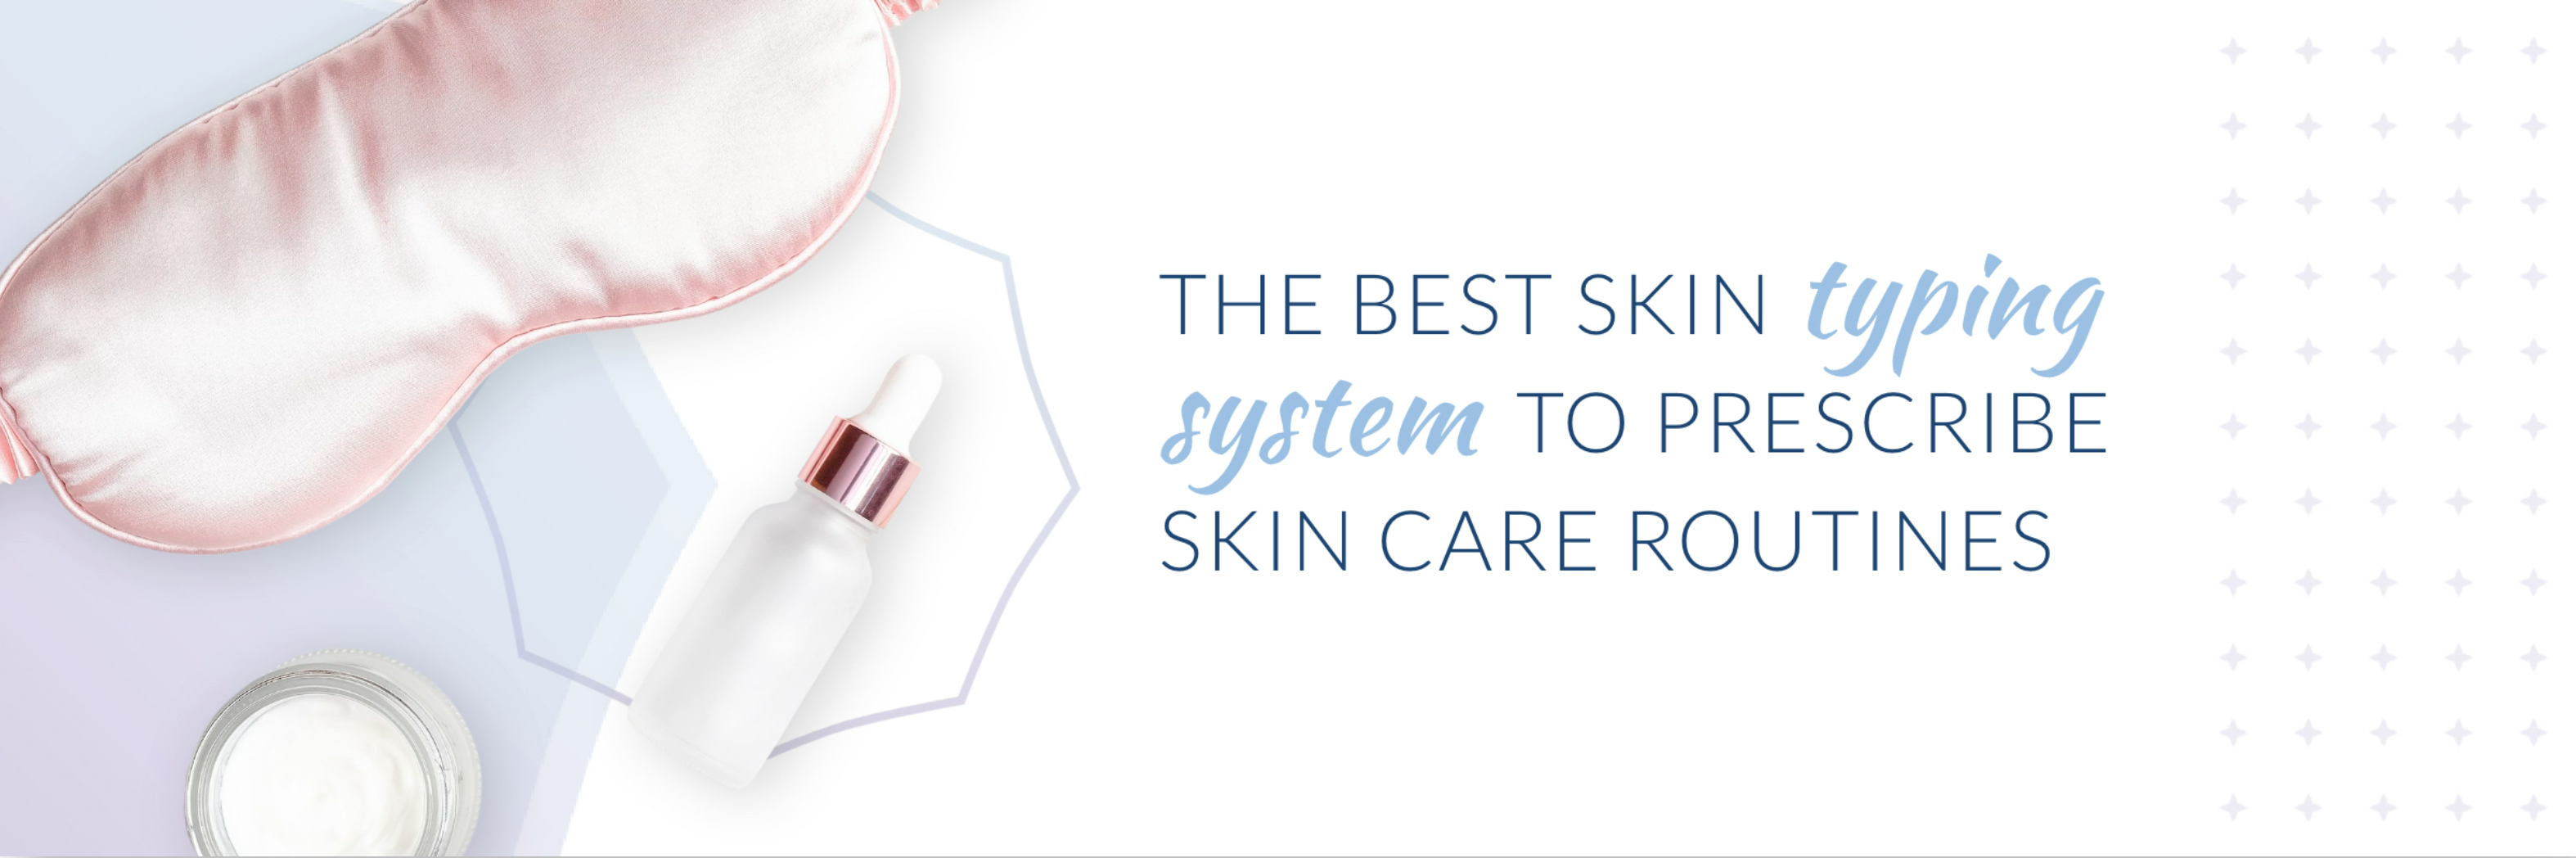 prescribe skin care routines